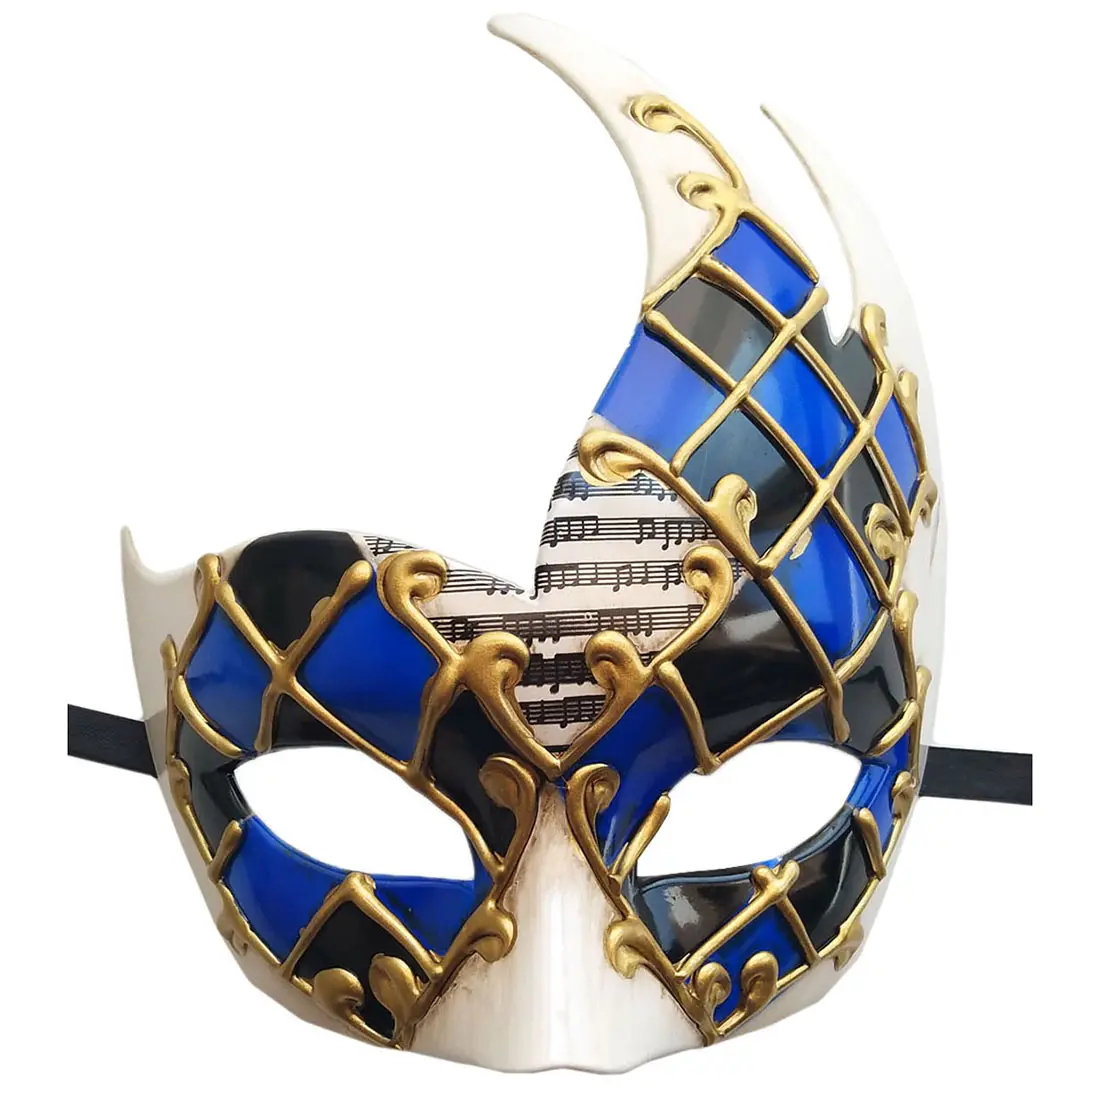 Mascarilla de lujo de Mardi Gras para fiesta, máscara decorativa elegante veneciana para carnaval, vestido de fantasía, baile de Halloween, mascarilla de media cara